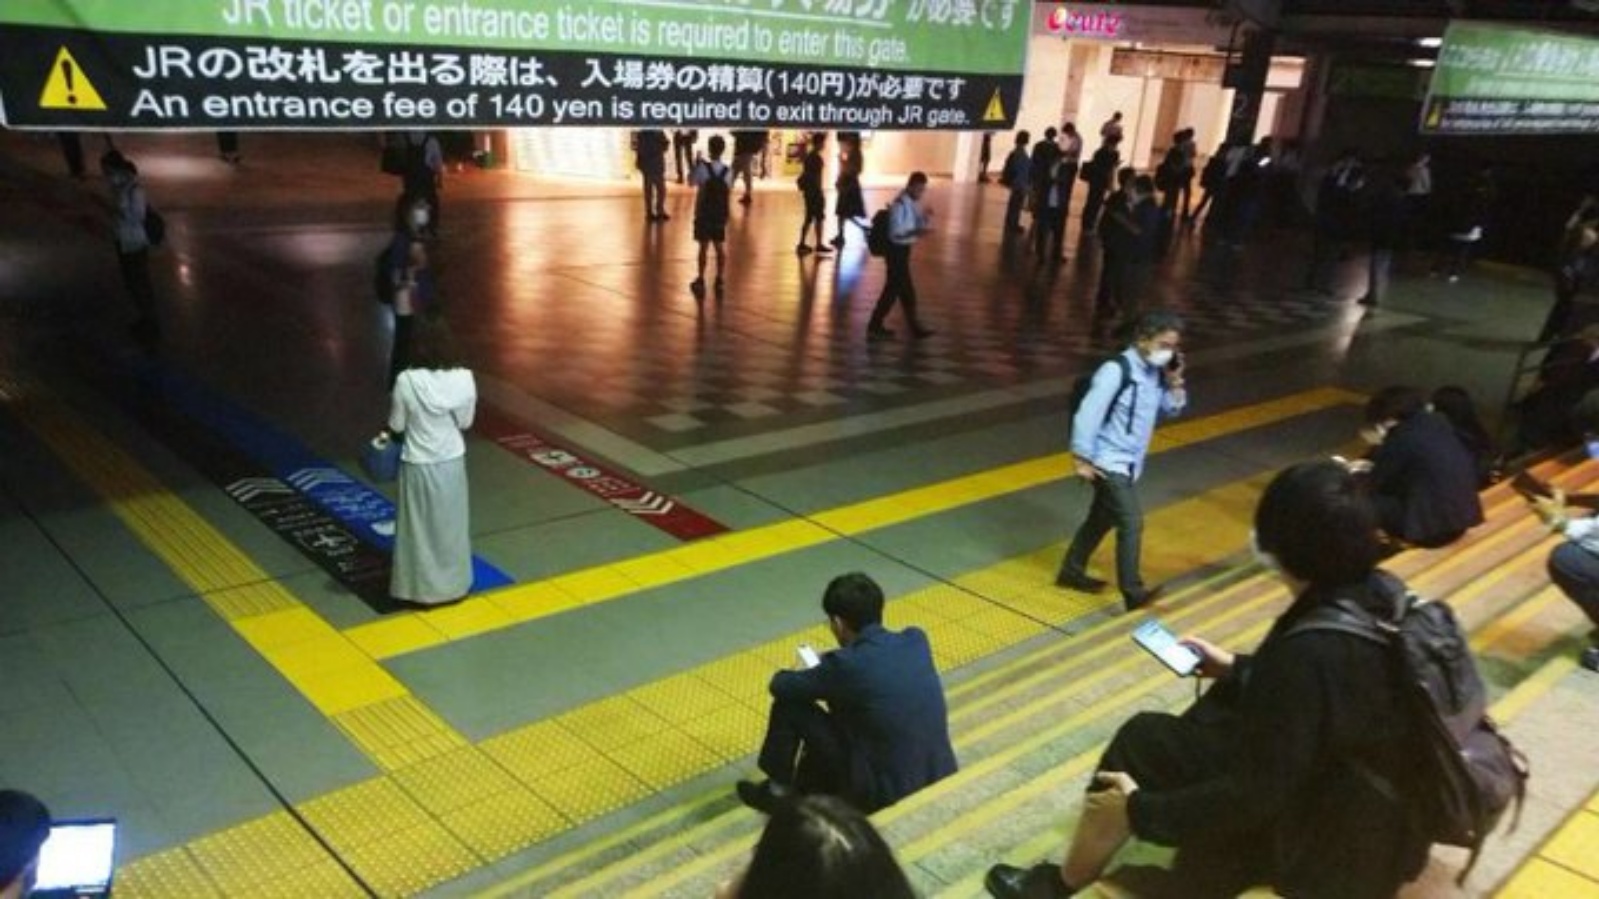 أشخاص ينتظرون إعادة تشغيل القطارات بعدما تم إيقافها بسبب الزلزال في طوكيو، اليابان. (من صفحة Ross Feingold في تويتر)